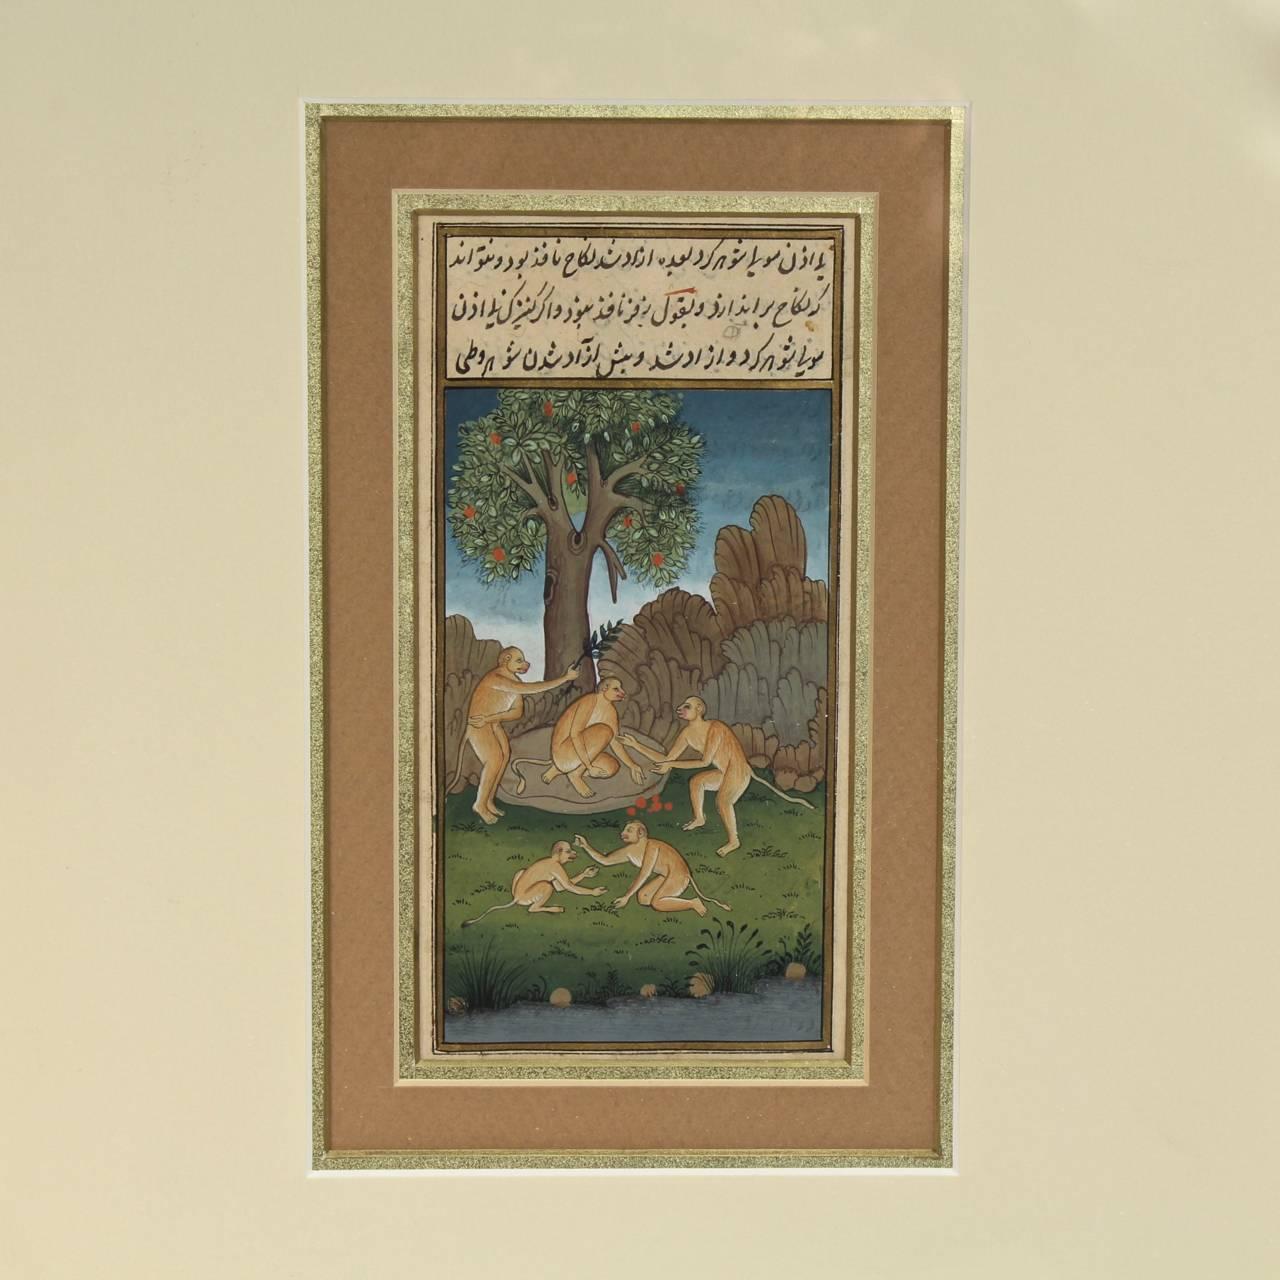 Un beau manuscrit ancien indien ou indo-persan Moghul islamique illustré folio.

Représentation de singes cueillant des fruits à la base de l'arbre.

Décoration polychrome illustrée à la main sur papier. 

Monté sous passe-partout et verre